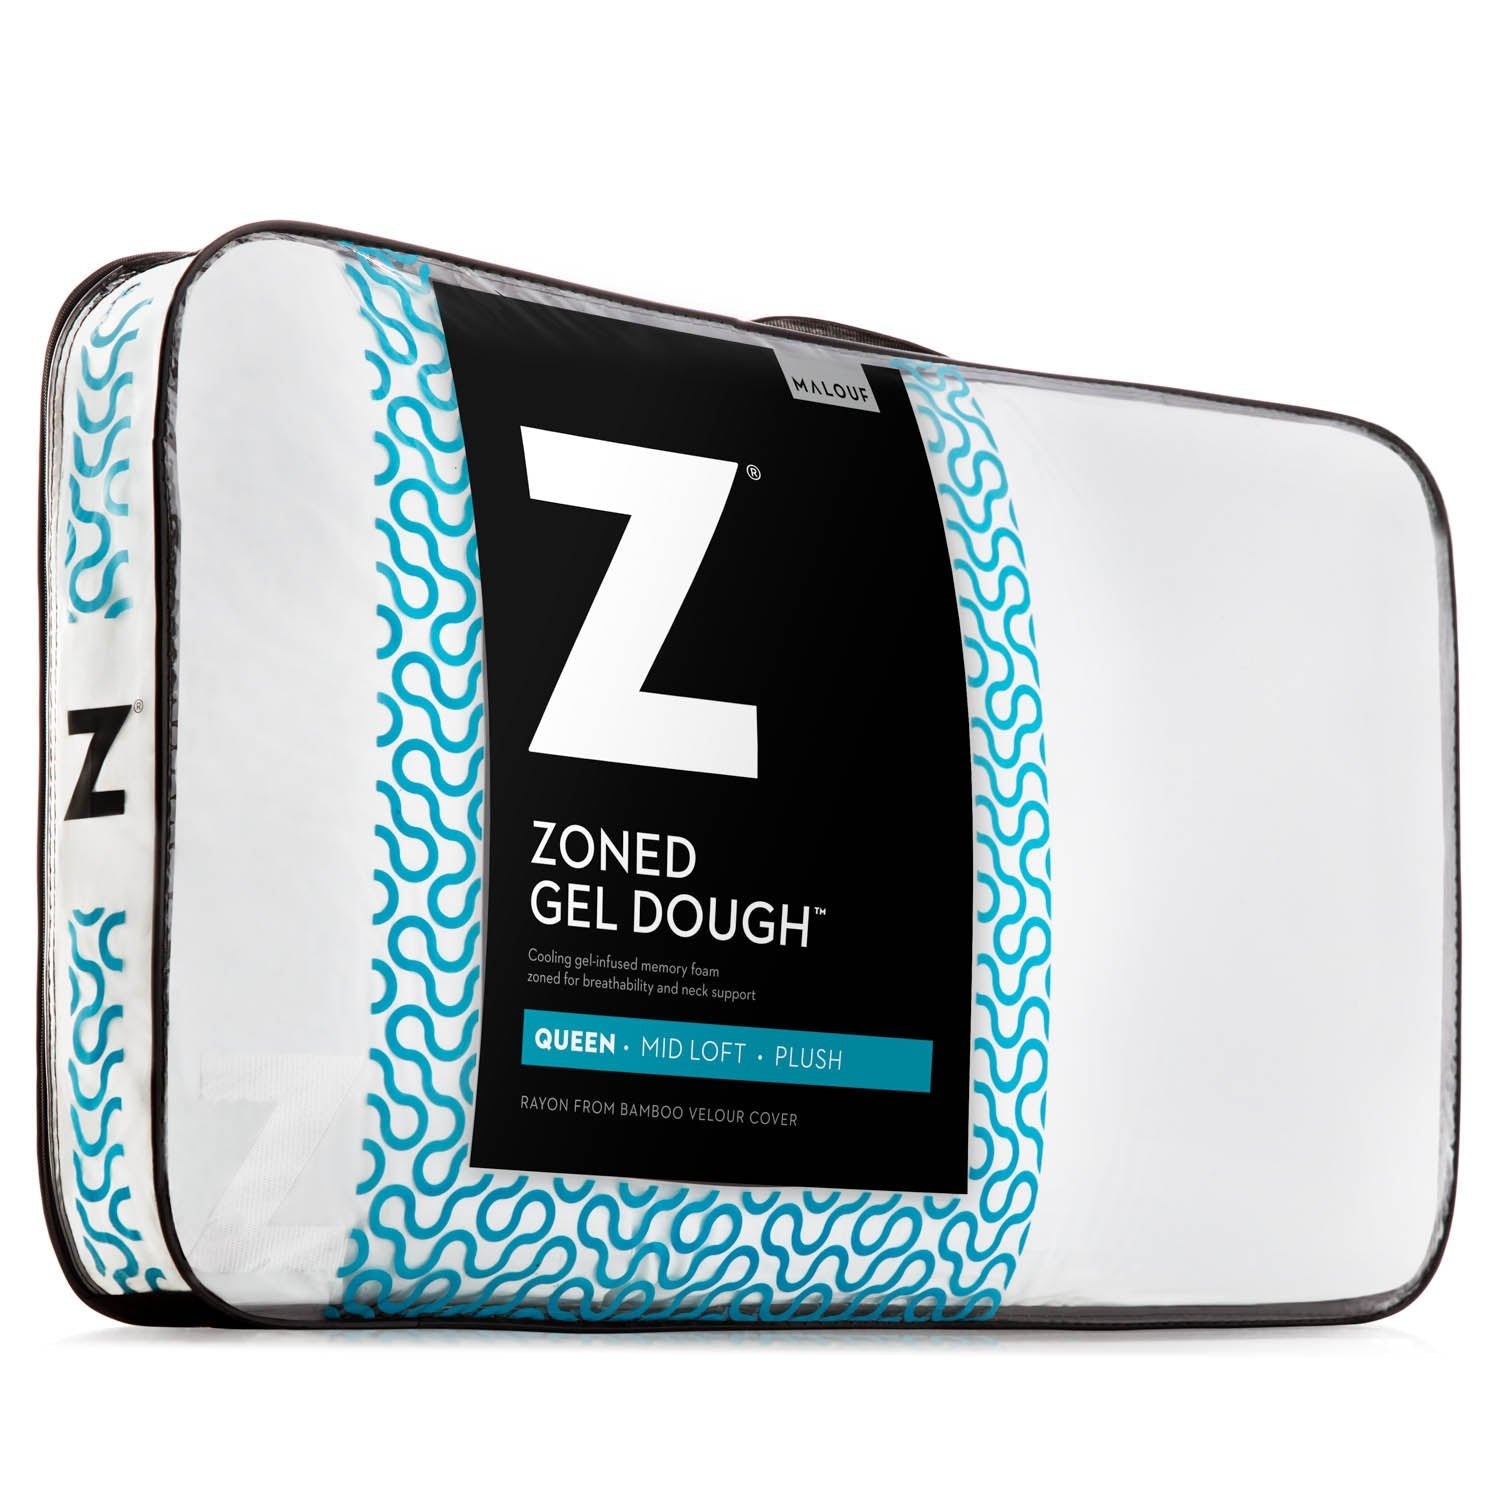 Z Zoned Gel Dough Pillow - Jura Sleep